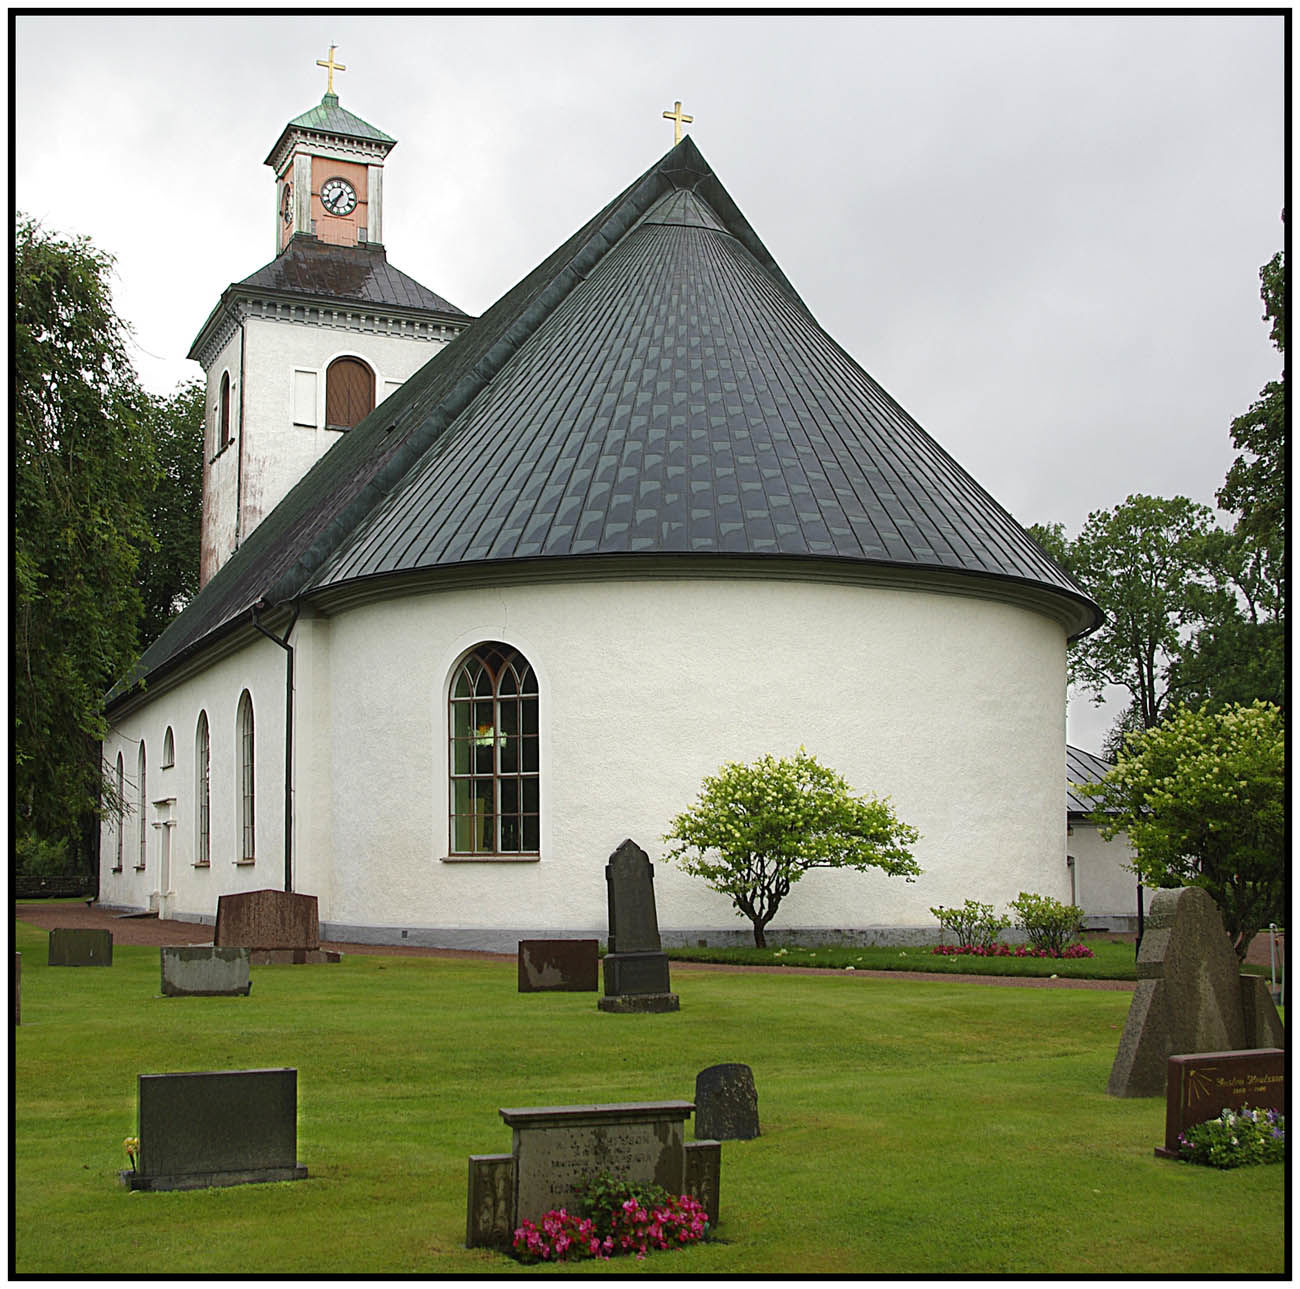 Södra Unnaryds kyrka